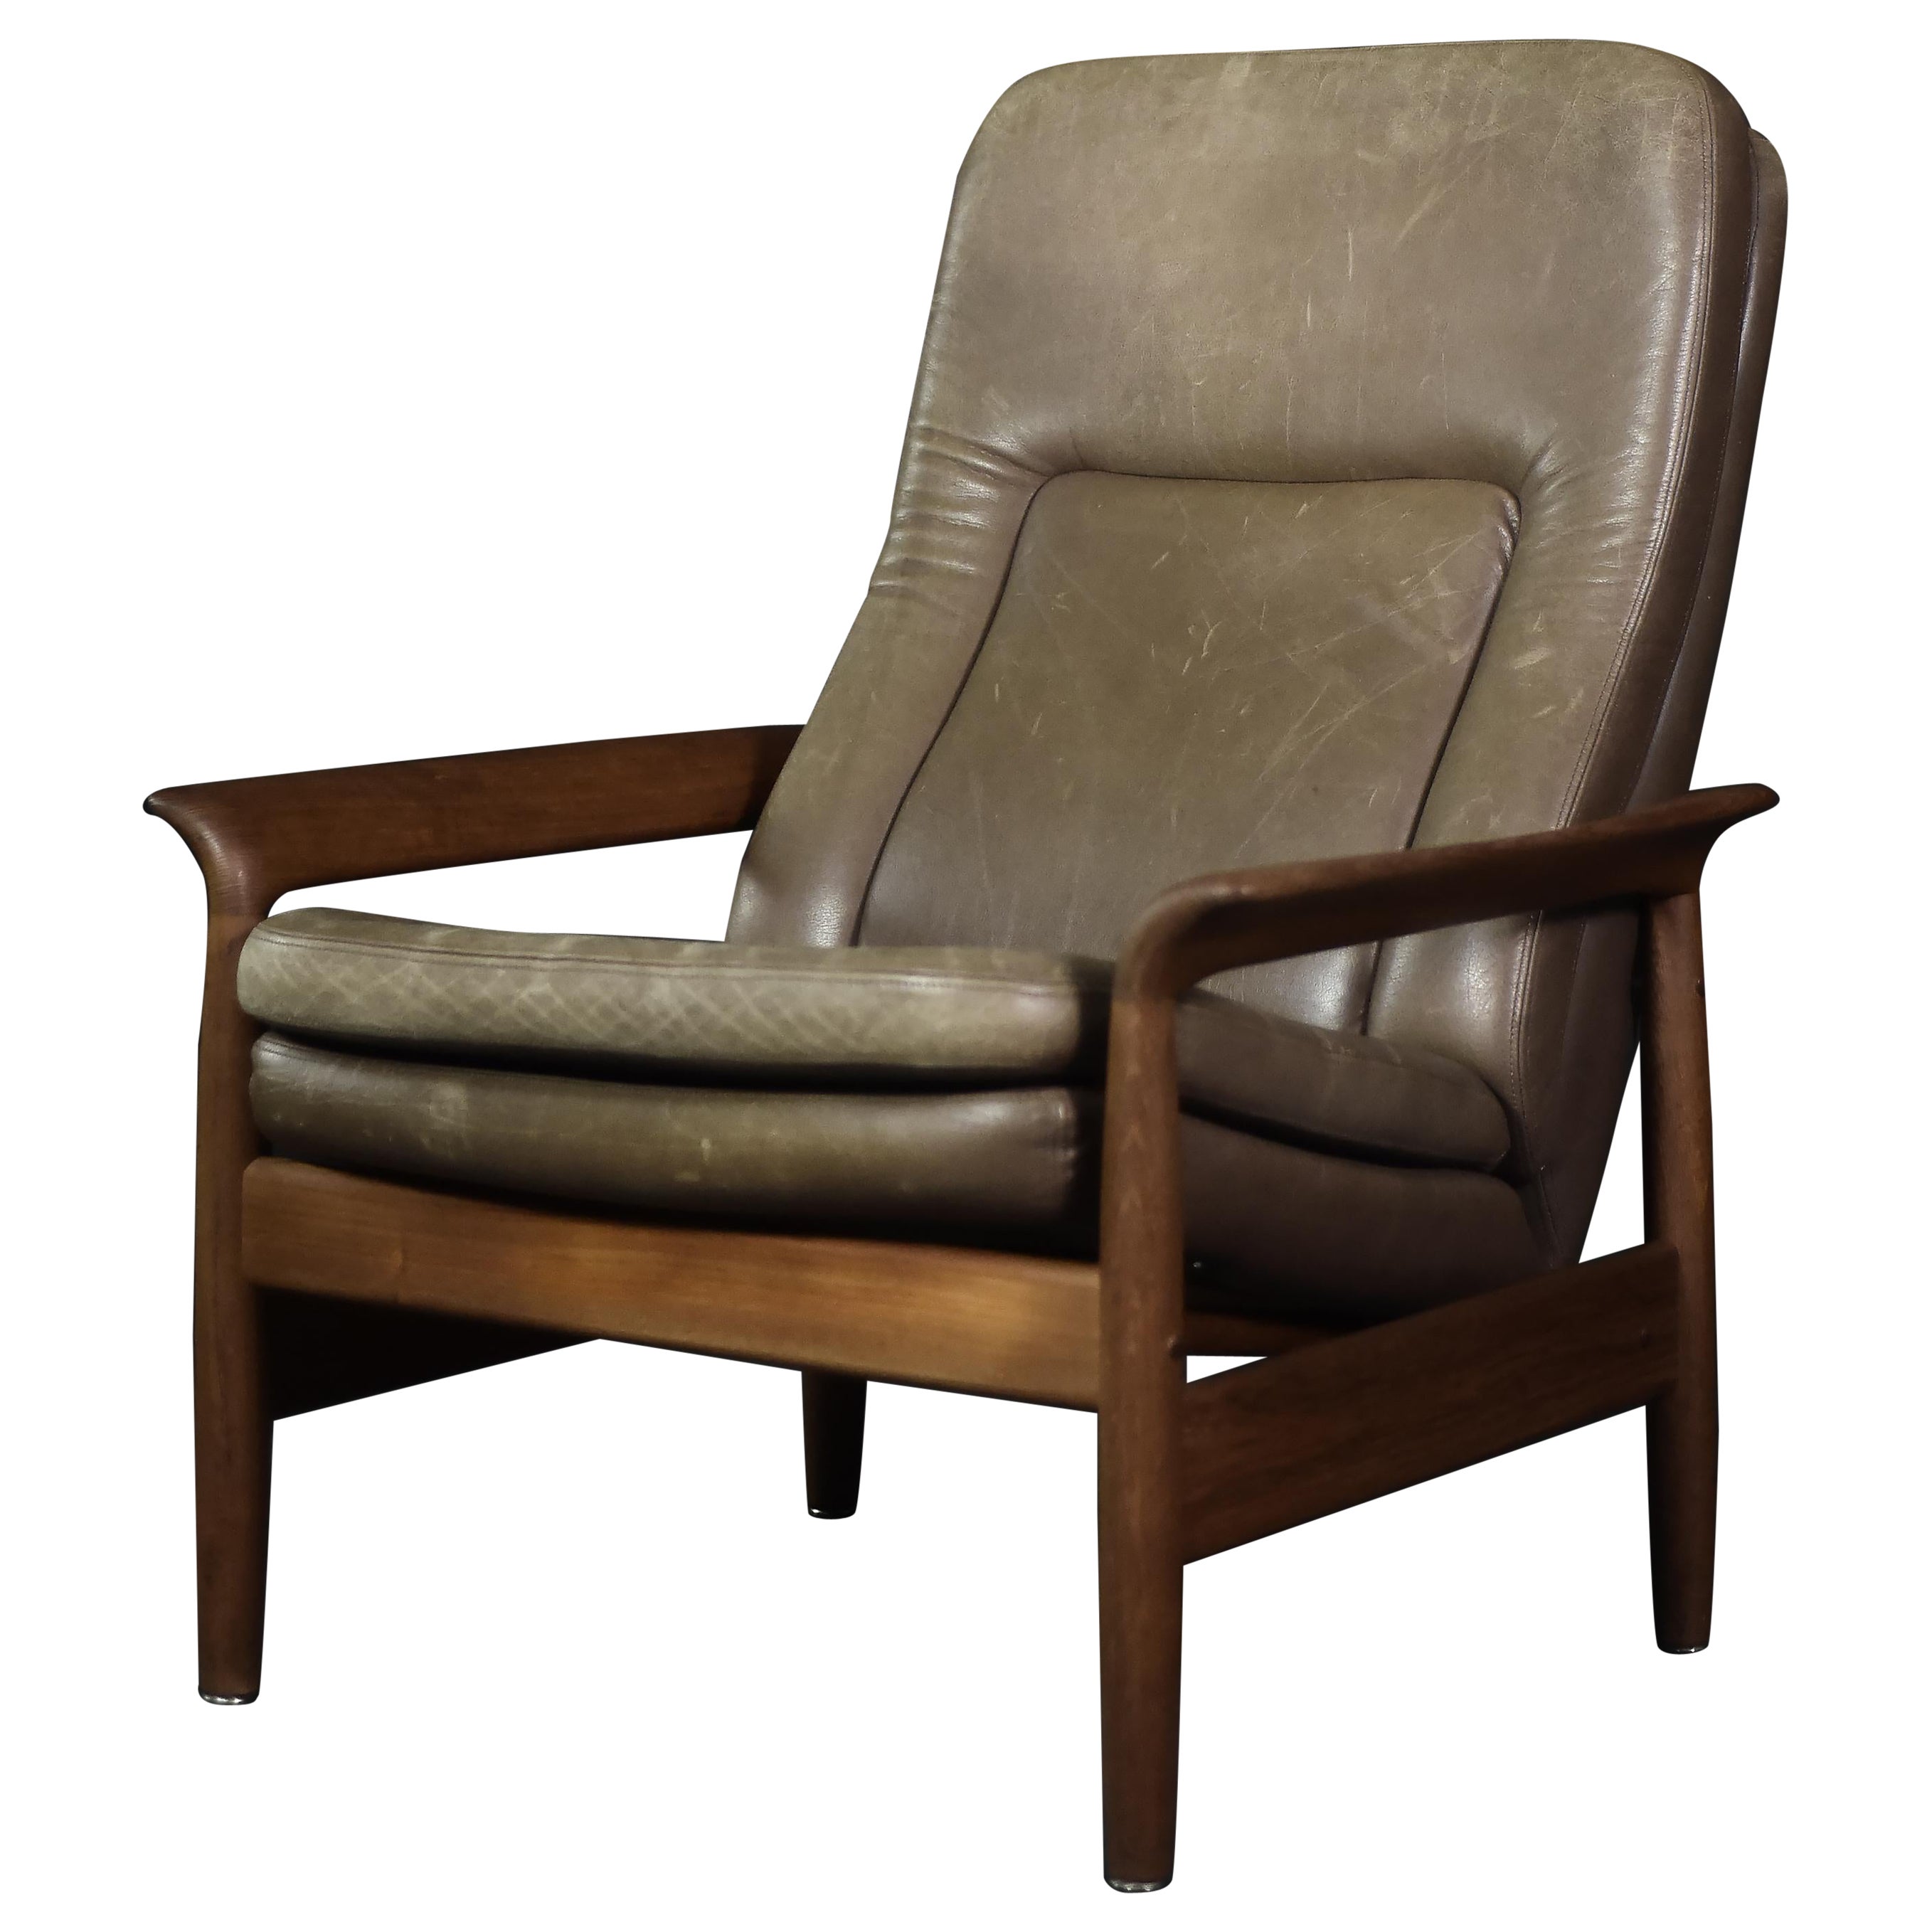 Vintage Mid-Century Danish Modern Teak&Leather Armchair with Reclining Backrest (Fauteuil en teck et cuir avec dossier inclinable) en vente